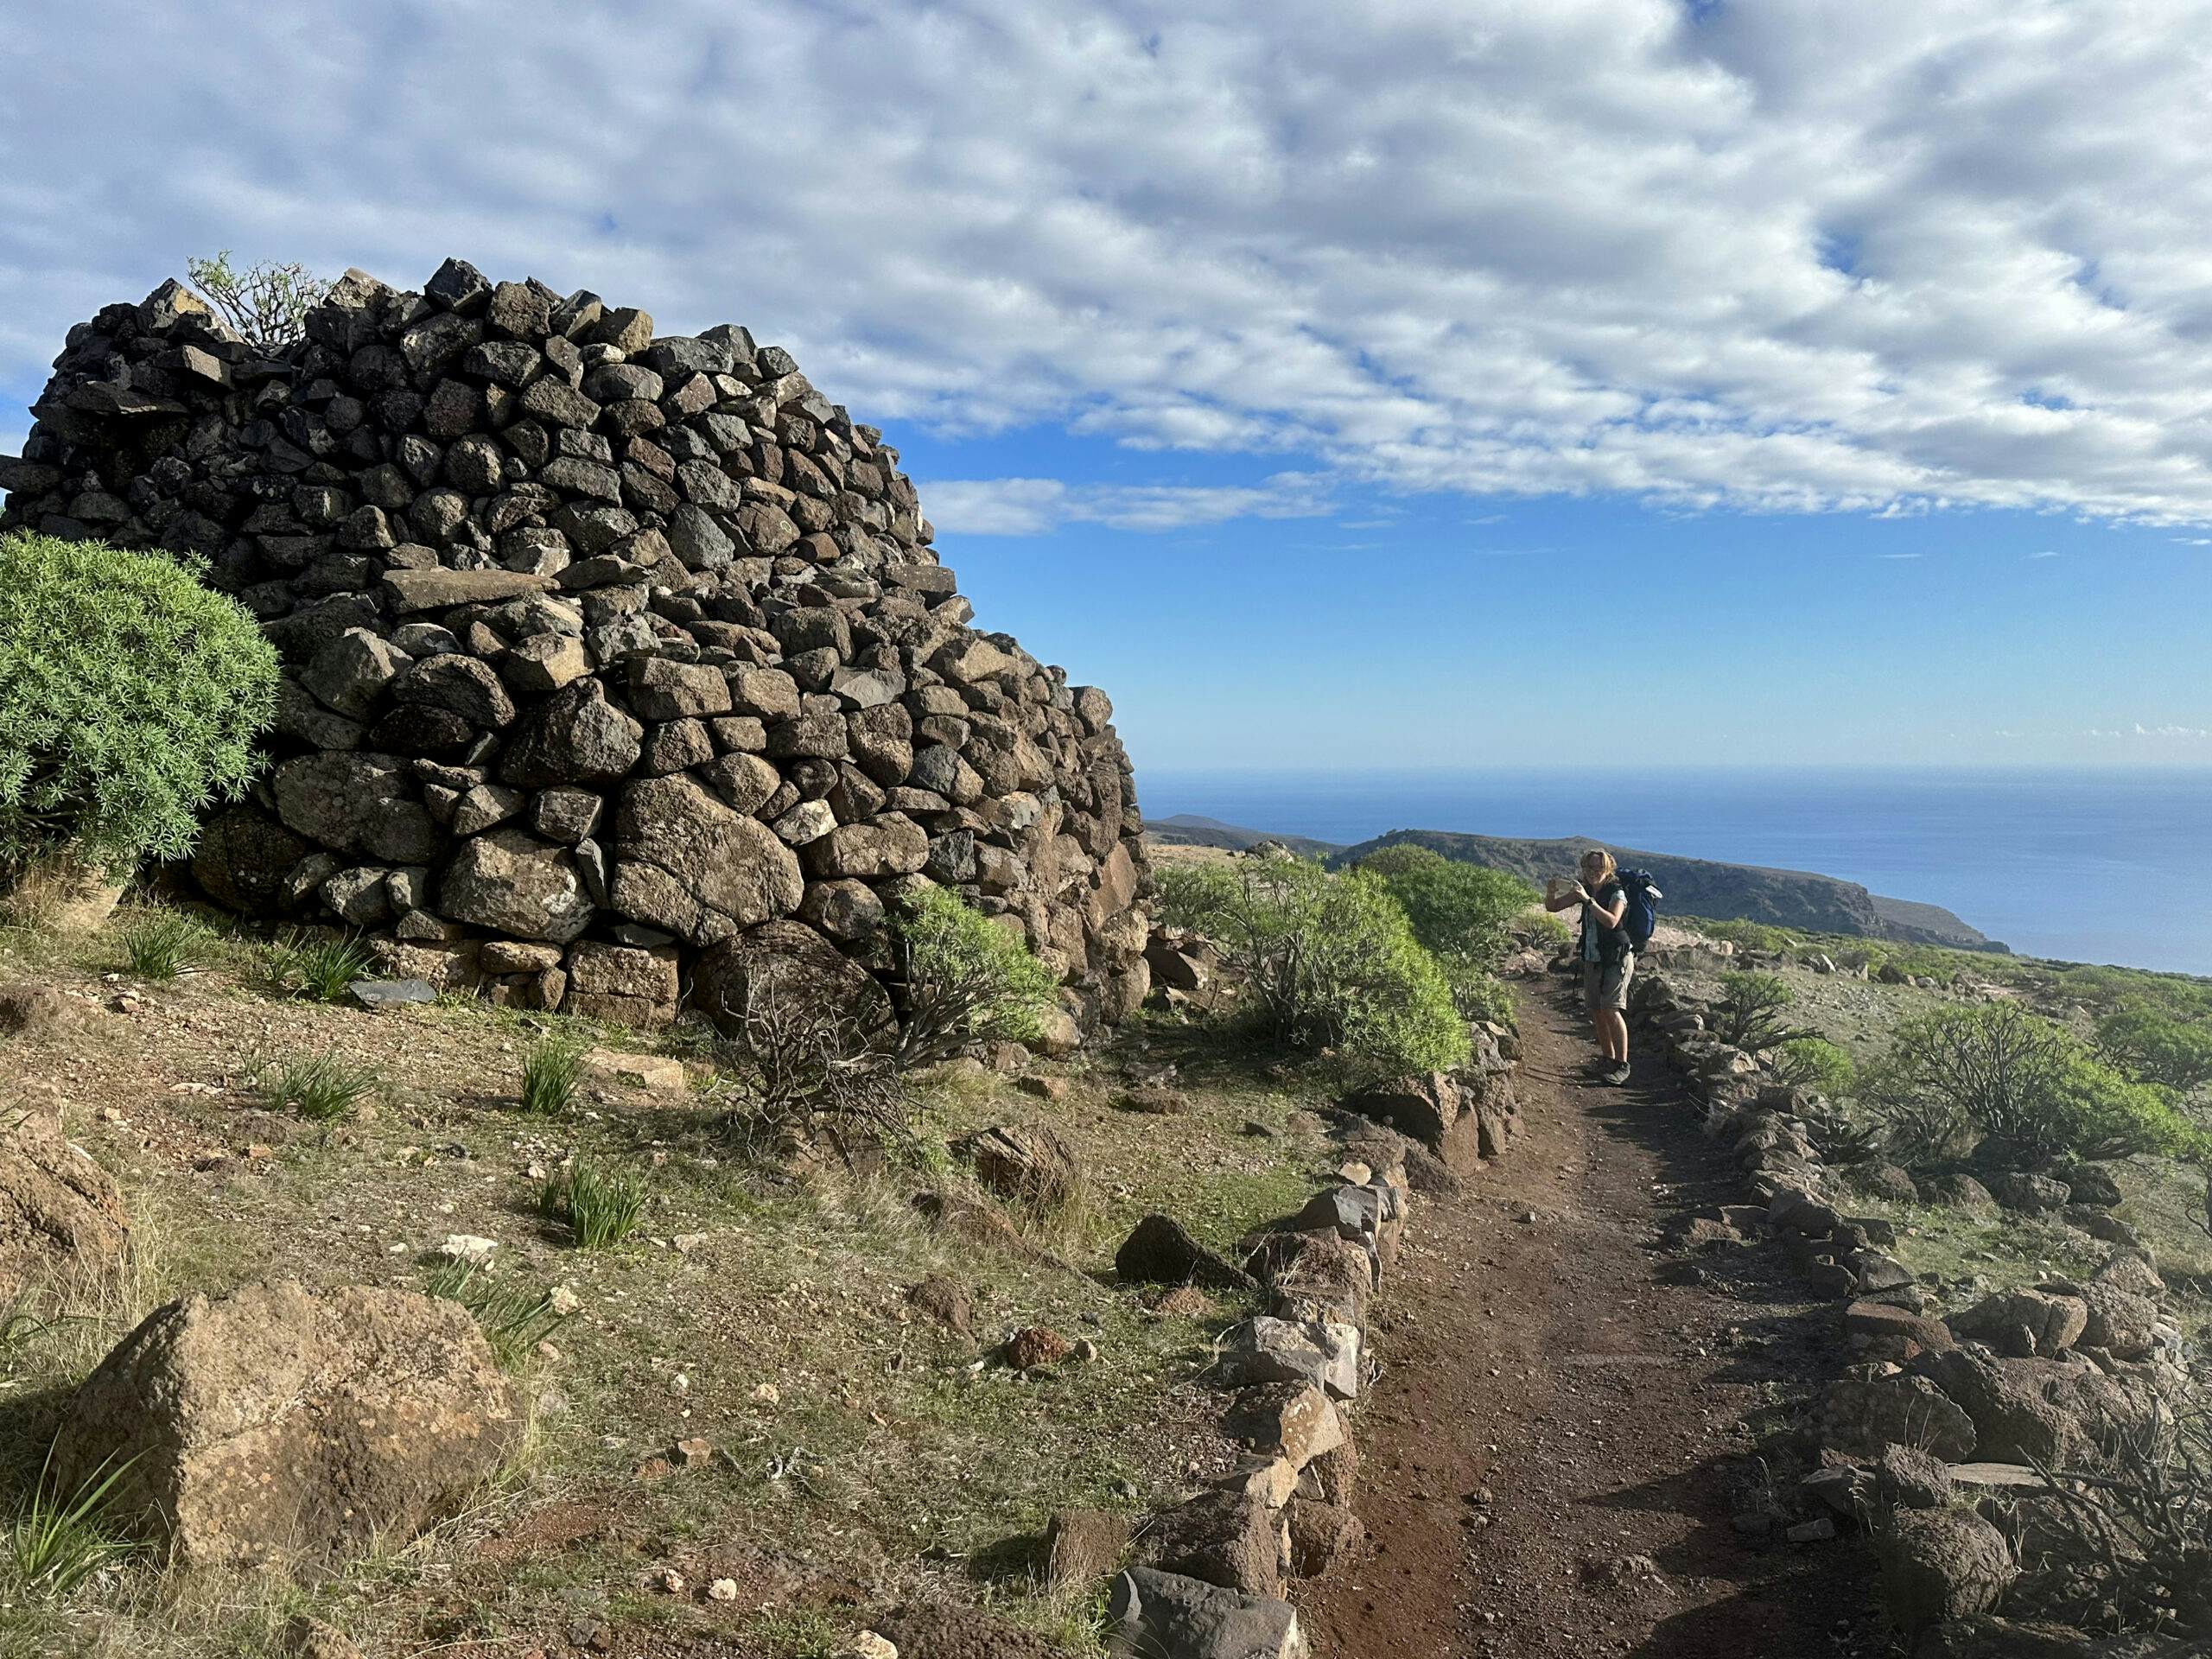 Wanderweg GR-132 Etappe 4 hinunter in das Valle Gran Rey vor den alten Kalkofen